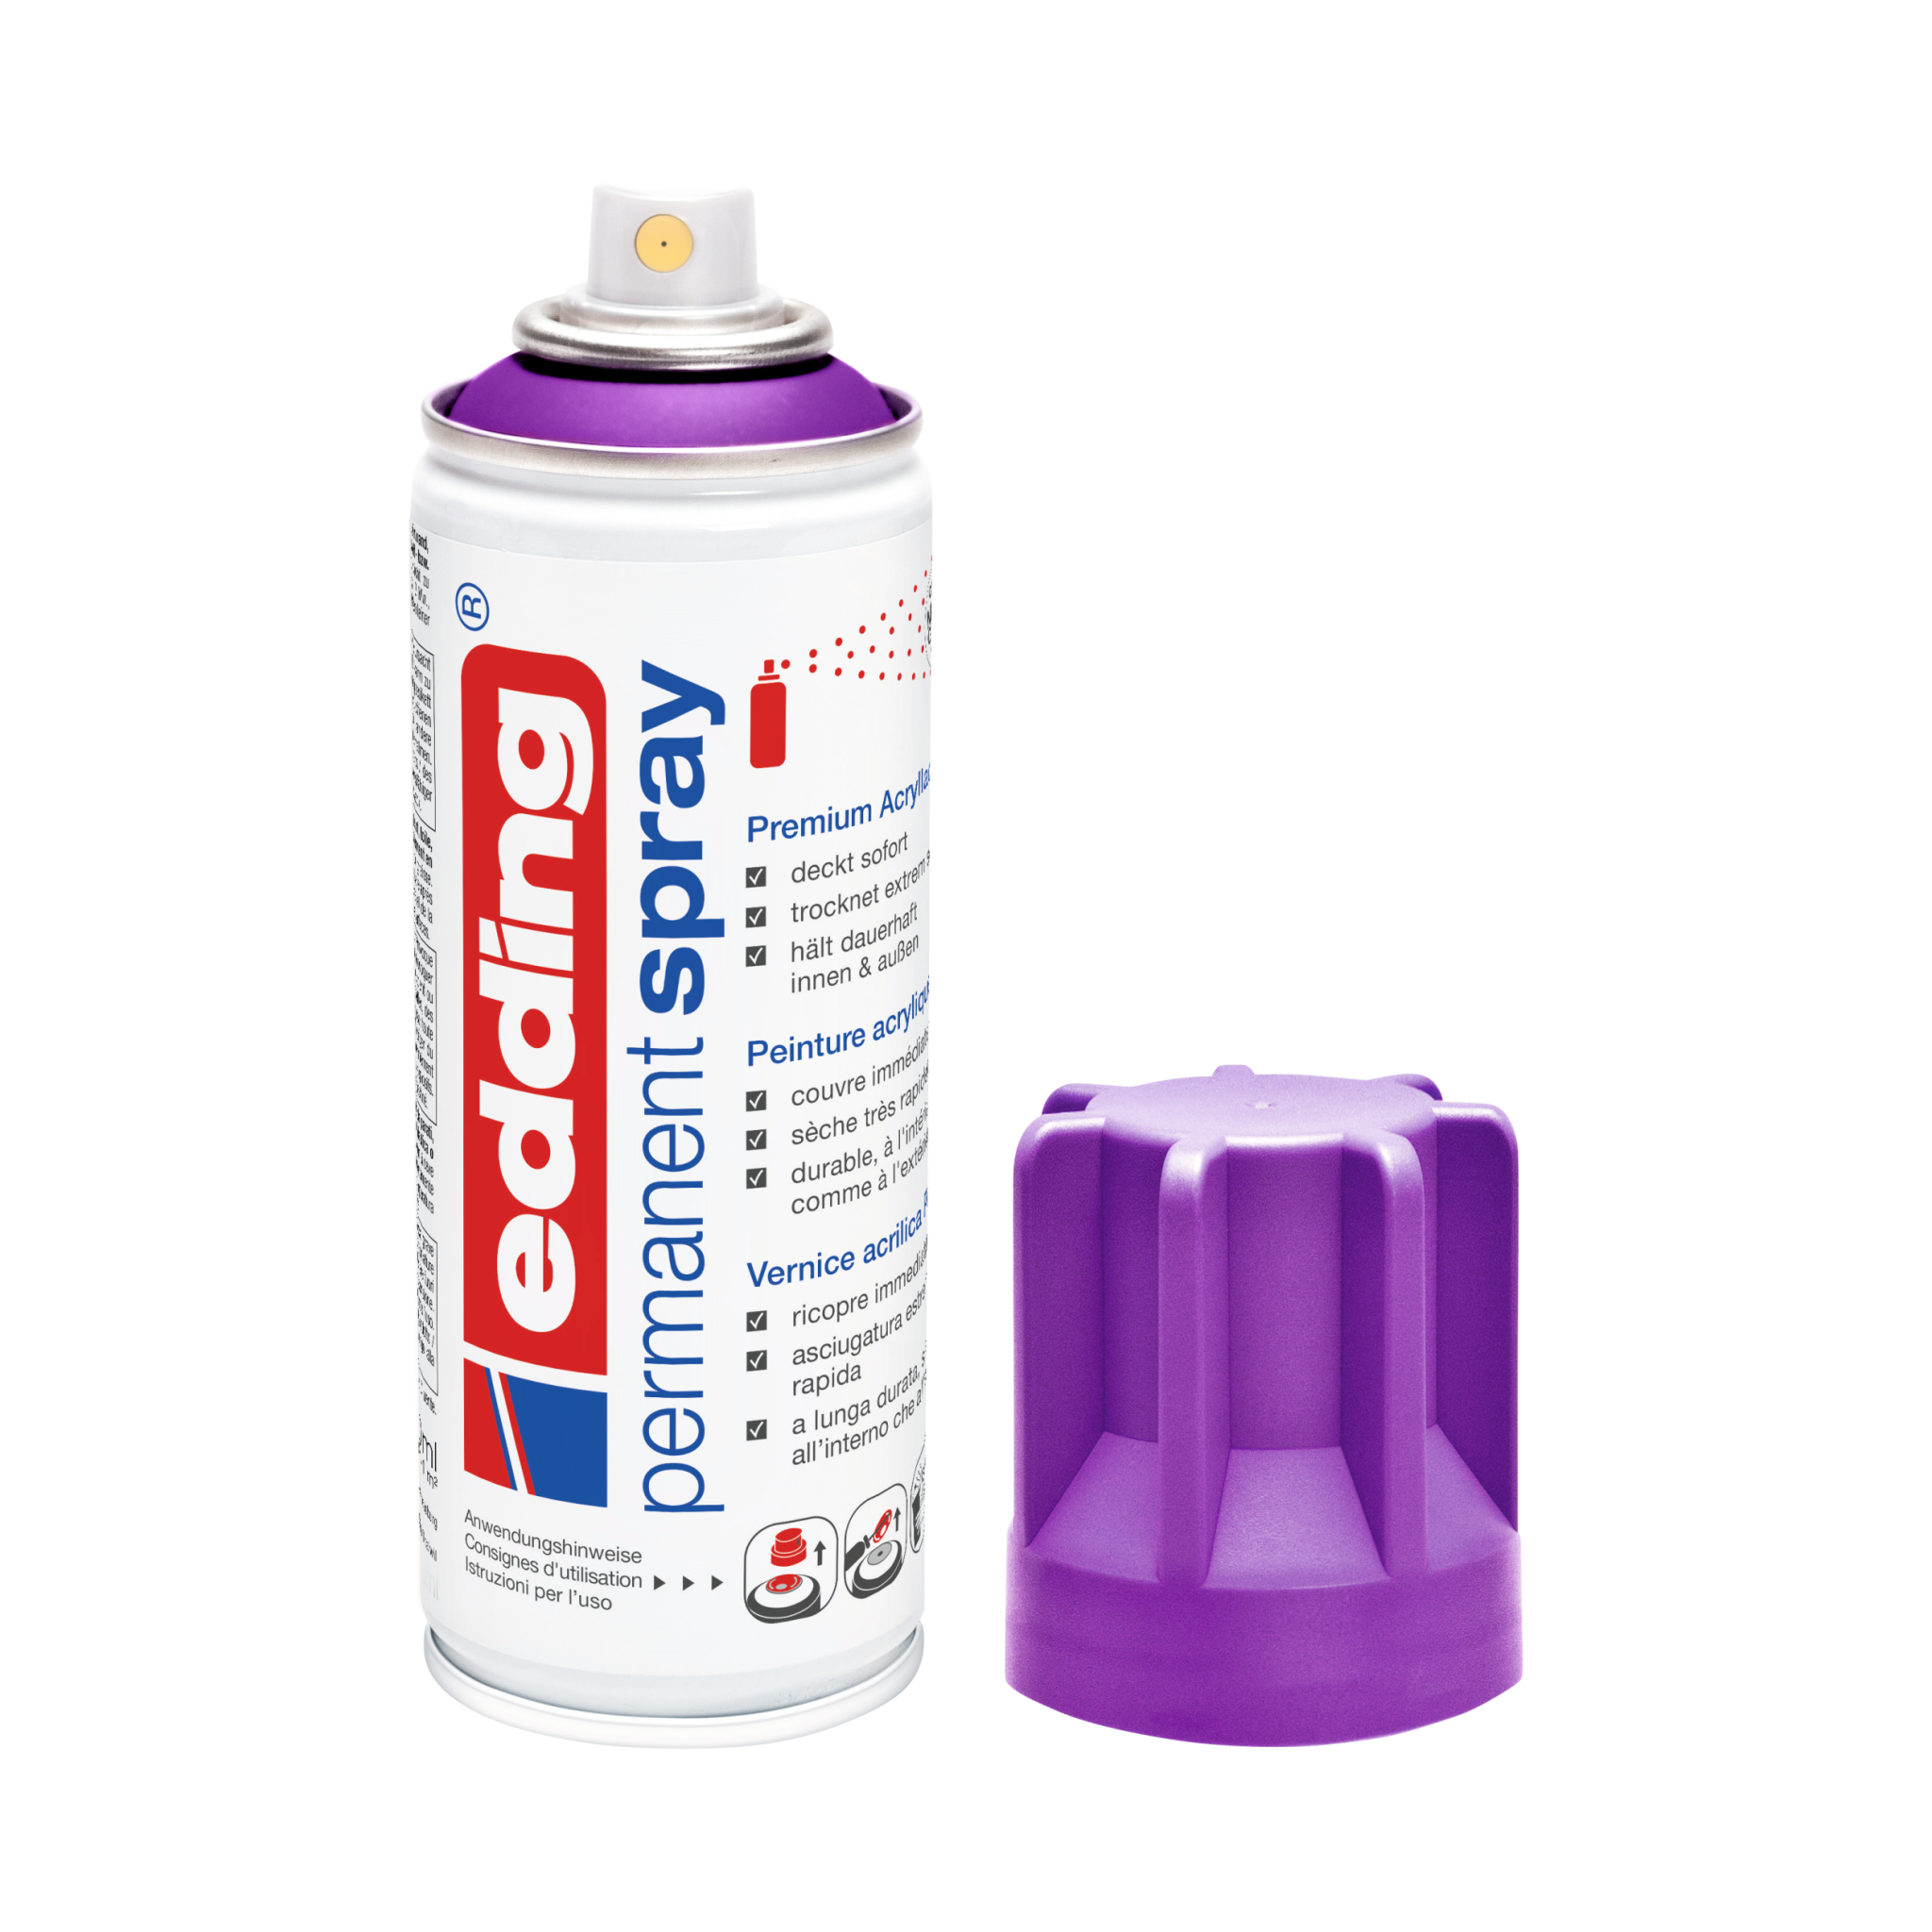 Eine Dose der Marke Edding, edding 5200 Permanentspray Acryllack Neon & Kräftig Farben, ohne Kappe, so dass die Düse zu sehen ist.